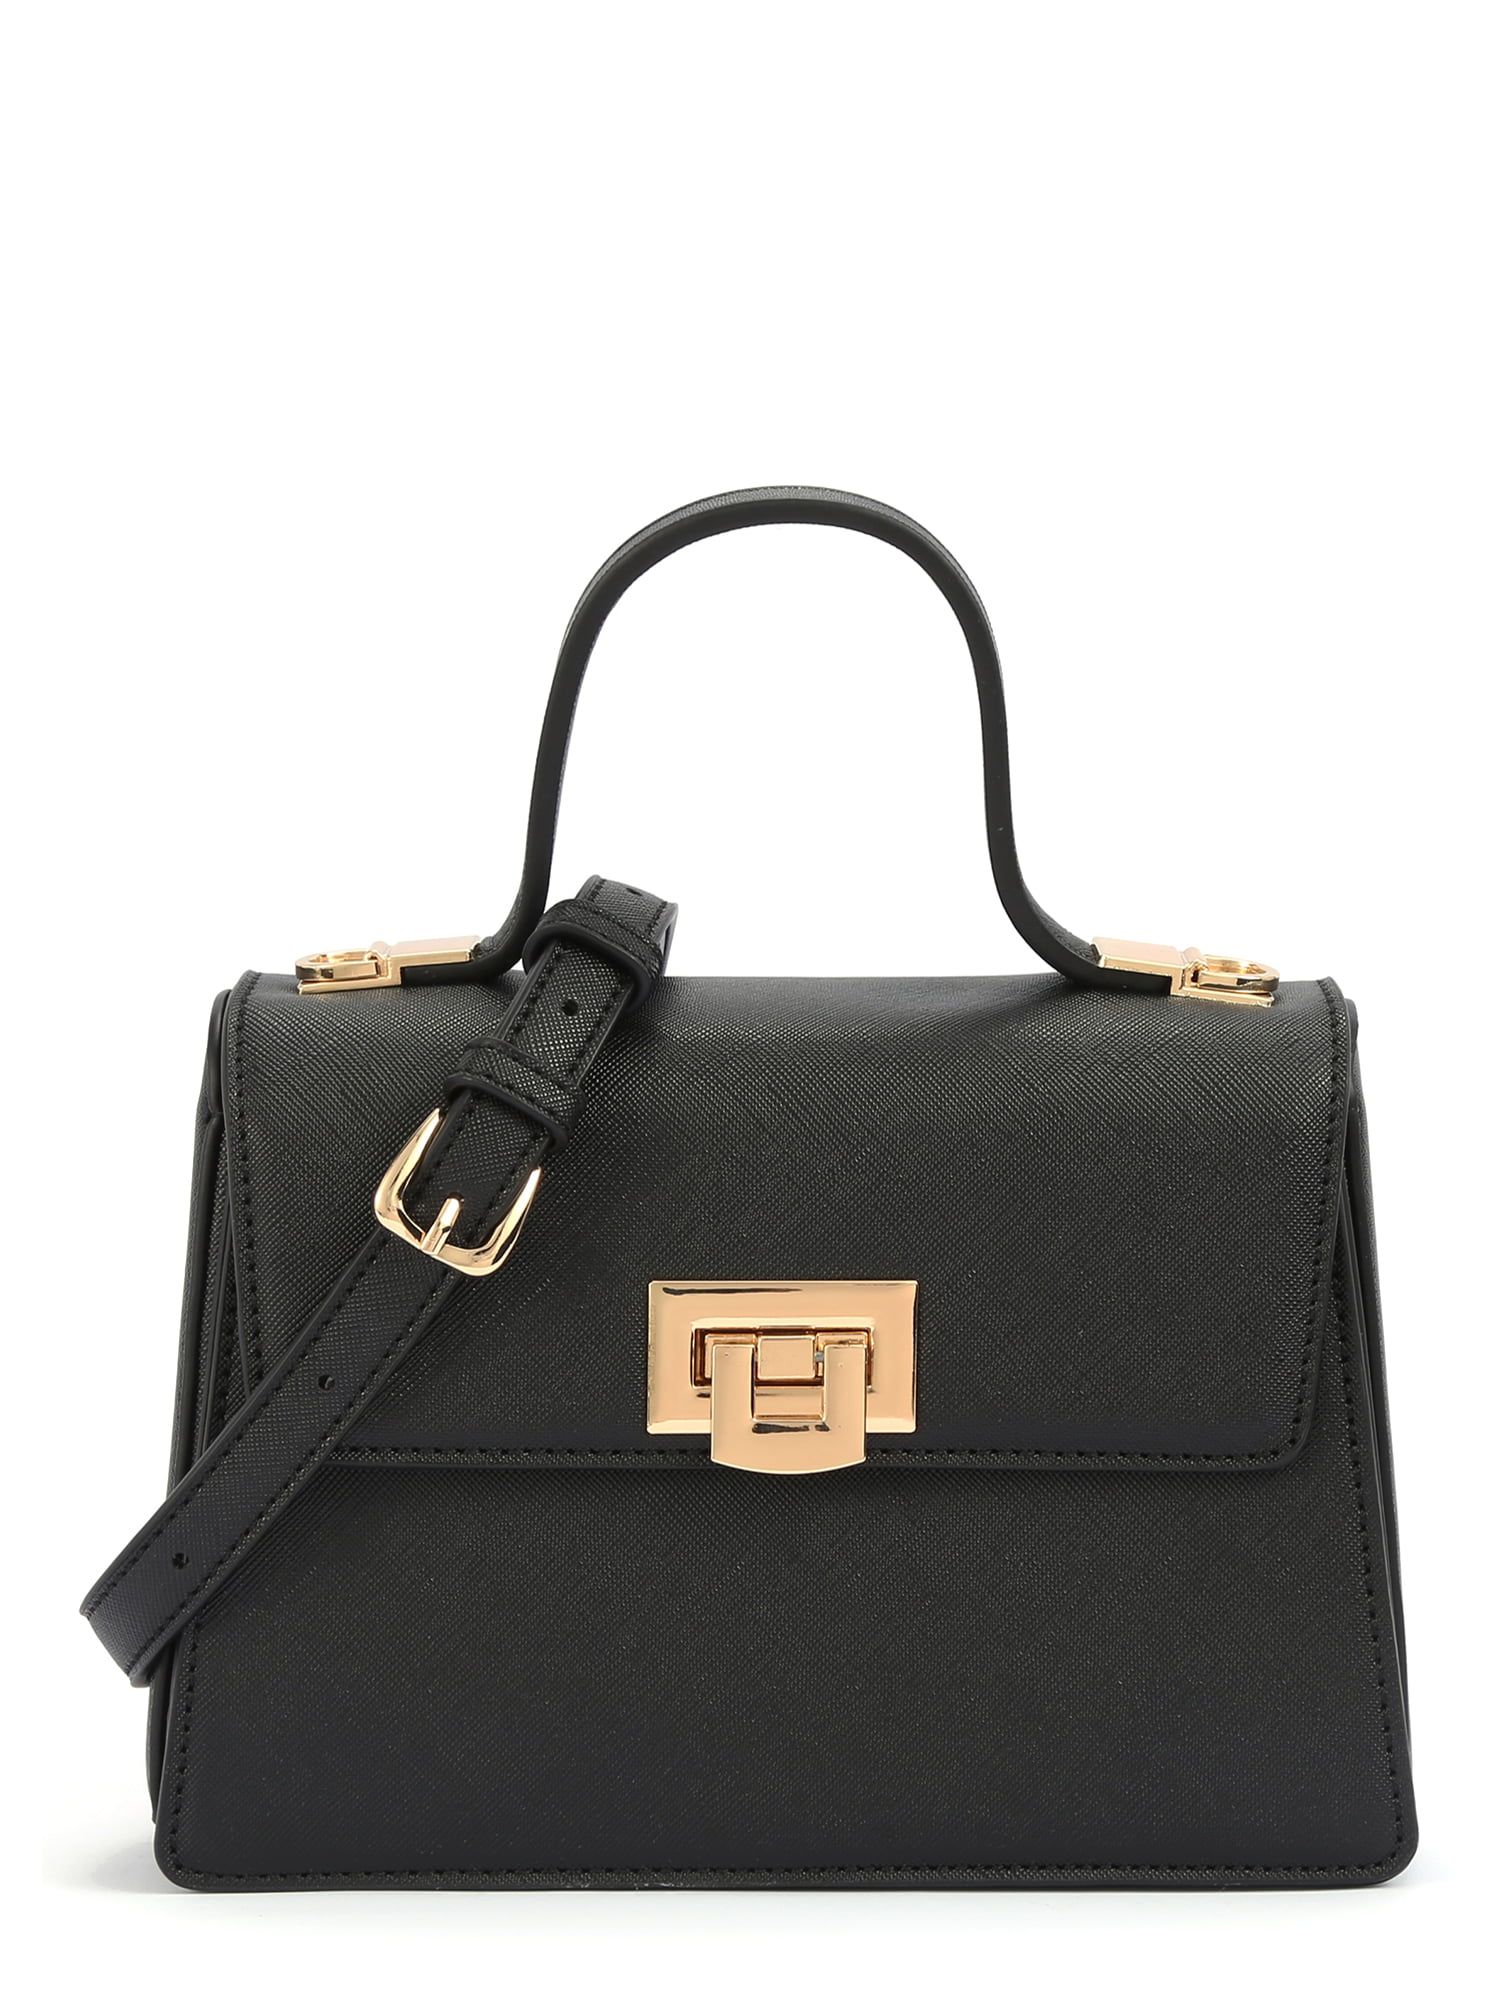 BeCool Women's Adult Top Handle Satchel Handbag with Lock Black | Walmart (US)